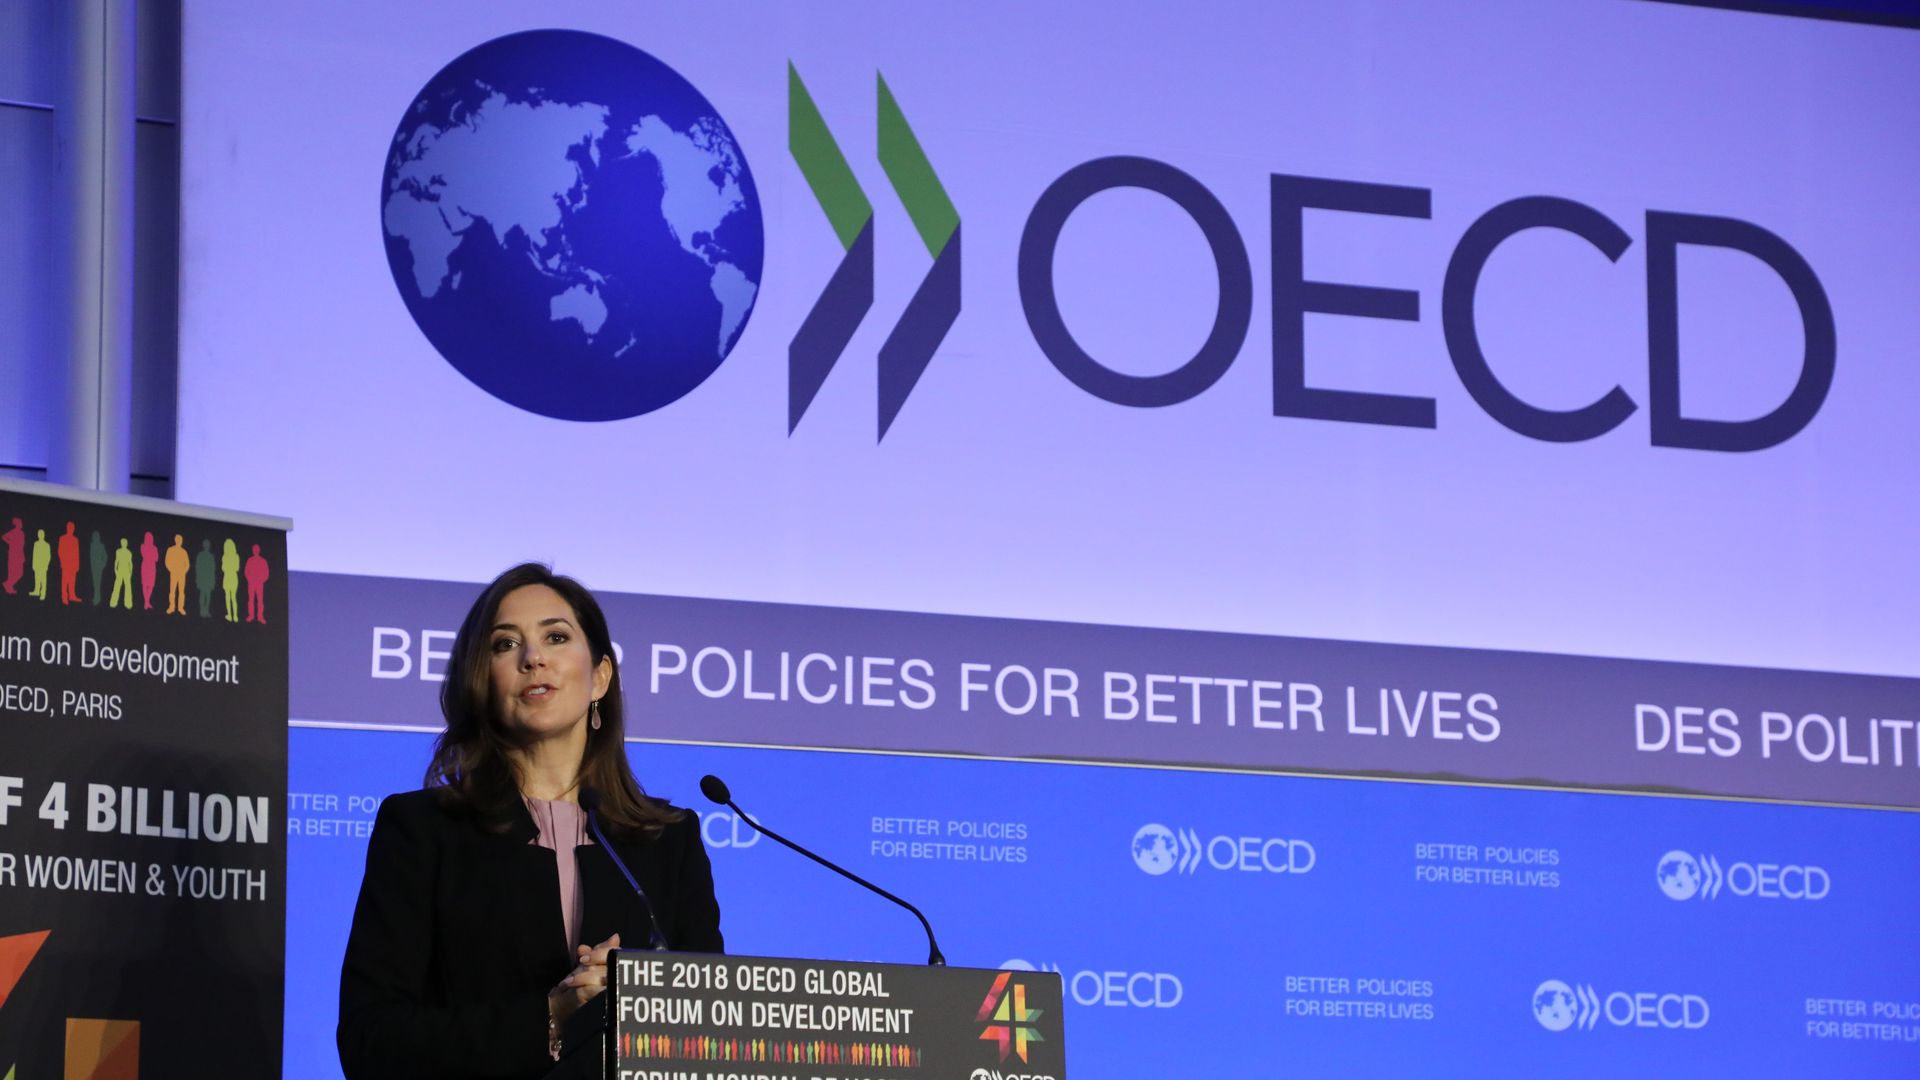 Crown princess of Denmark speaks during OECD forum